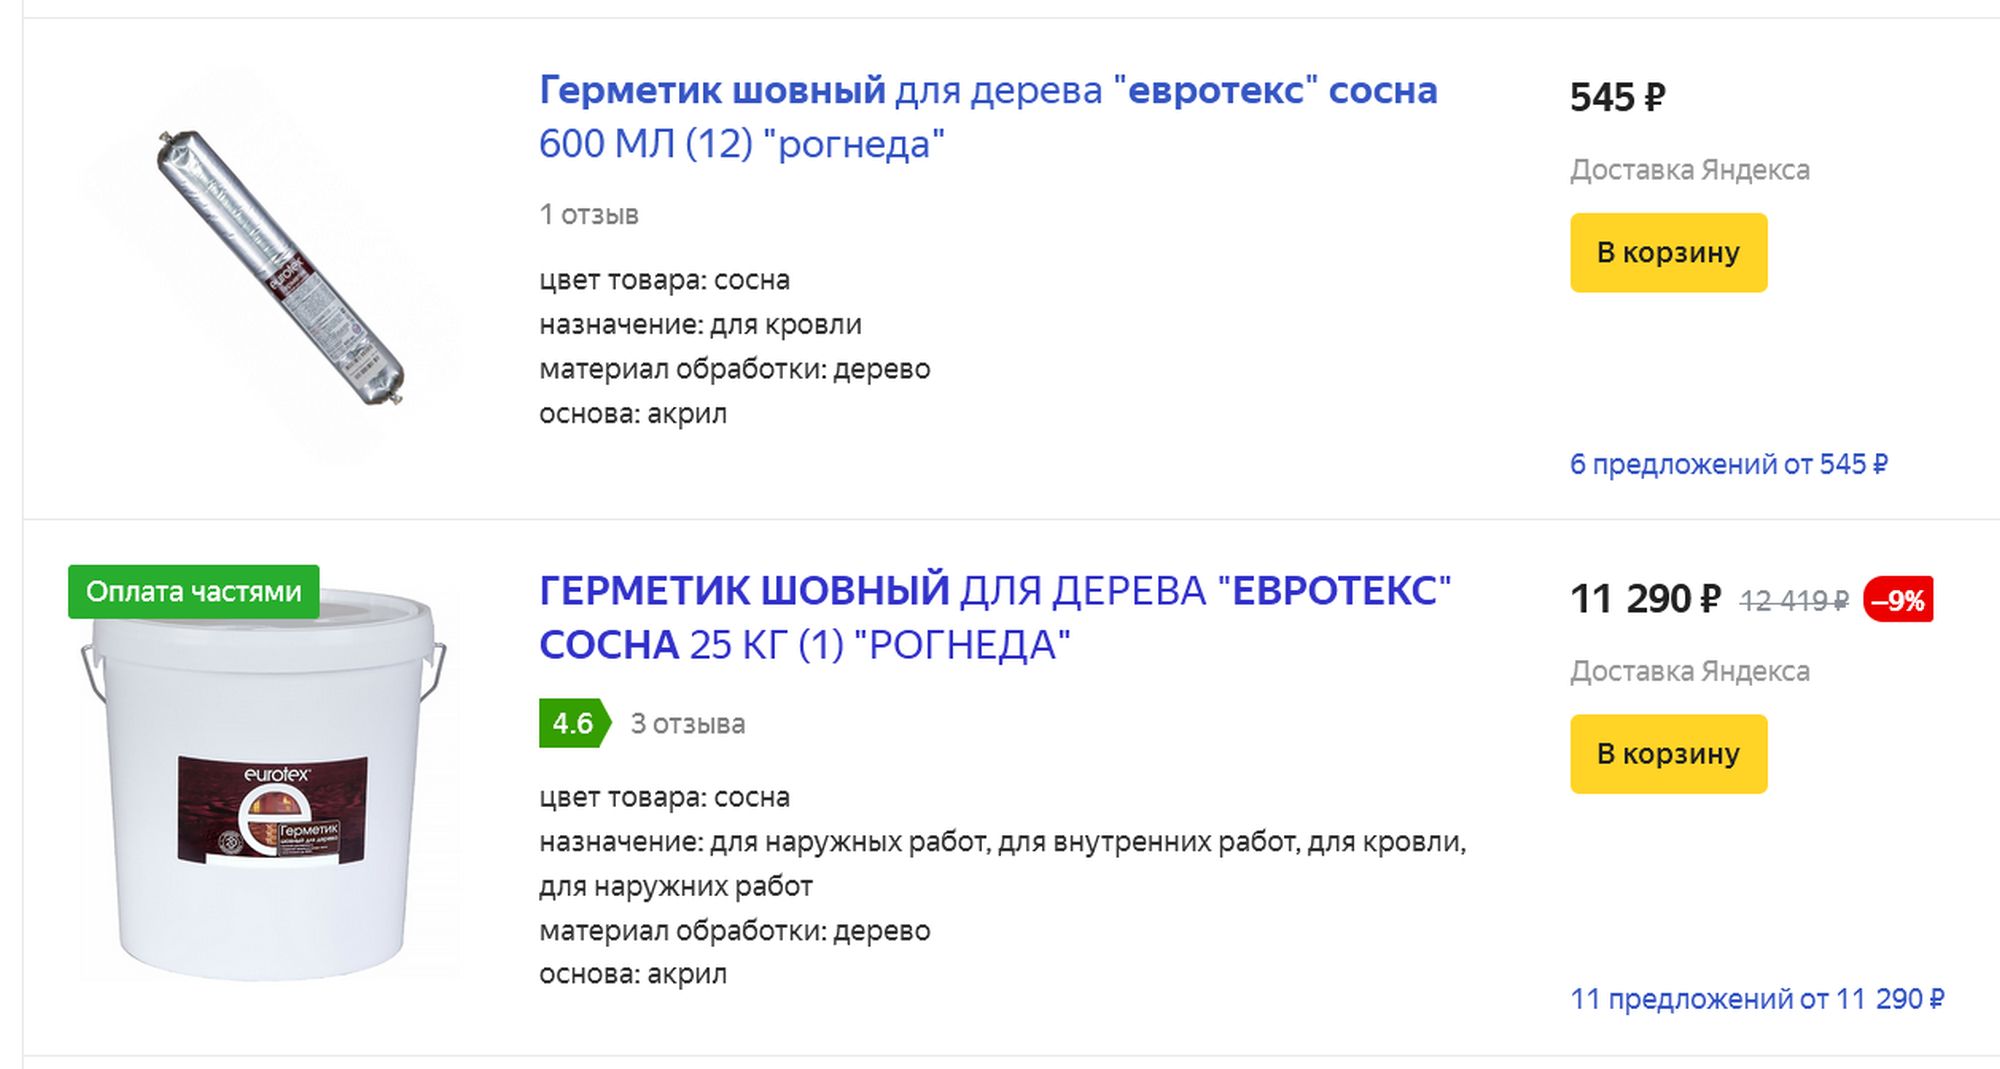 Купить герметик по дереву от официального дилера в Москве в интернет-магазине